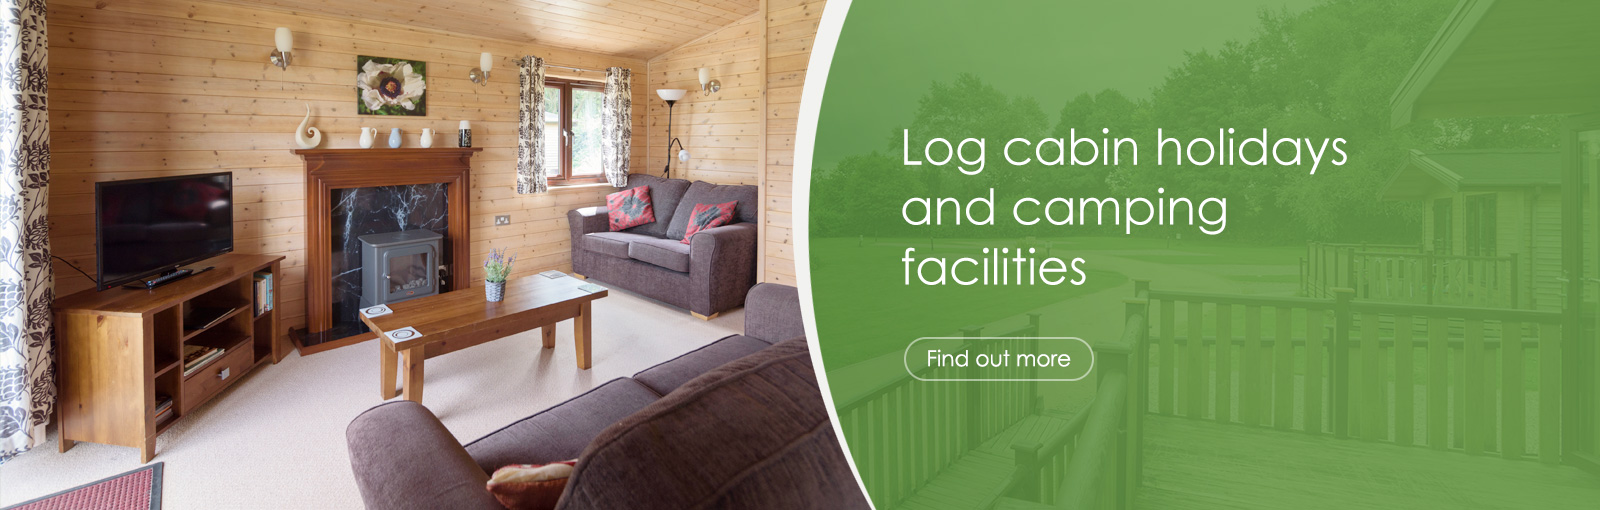 Log cabin holidays and camping facilities